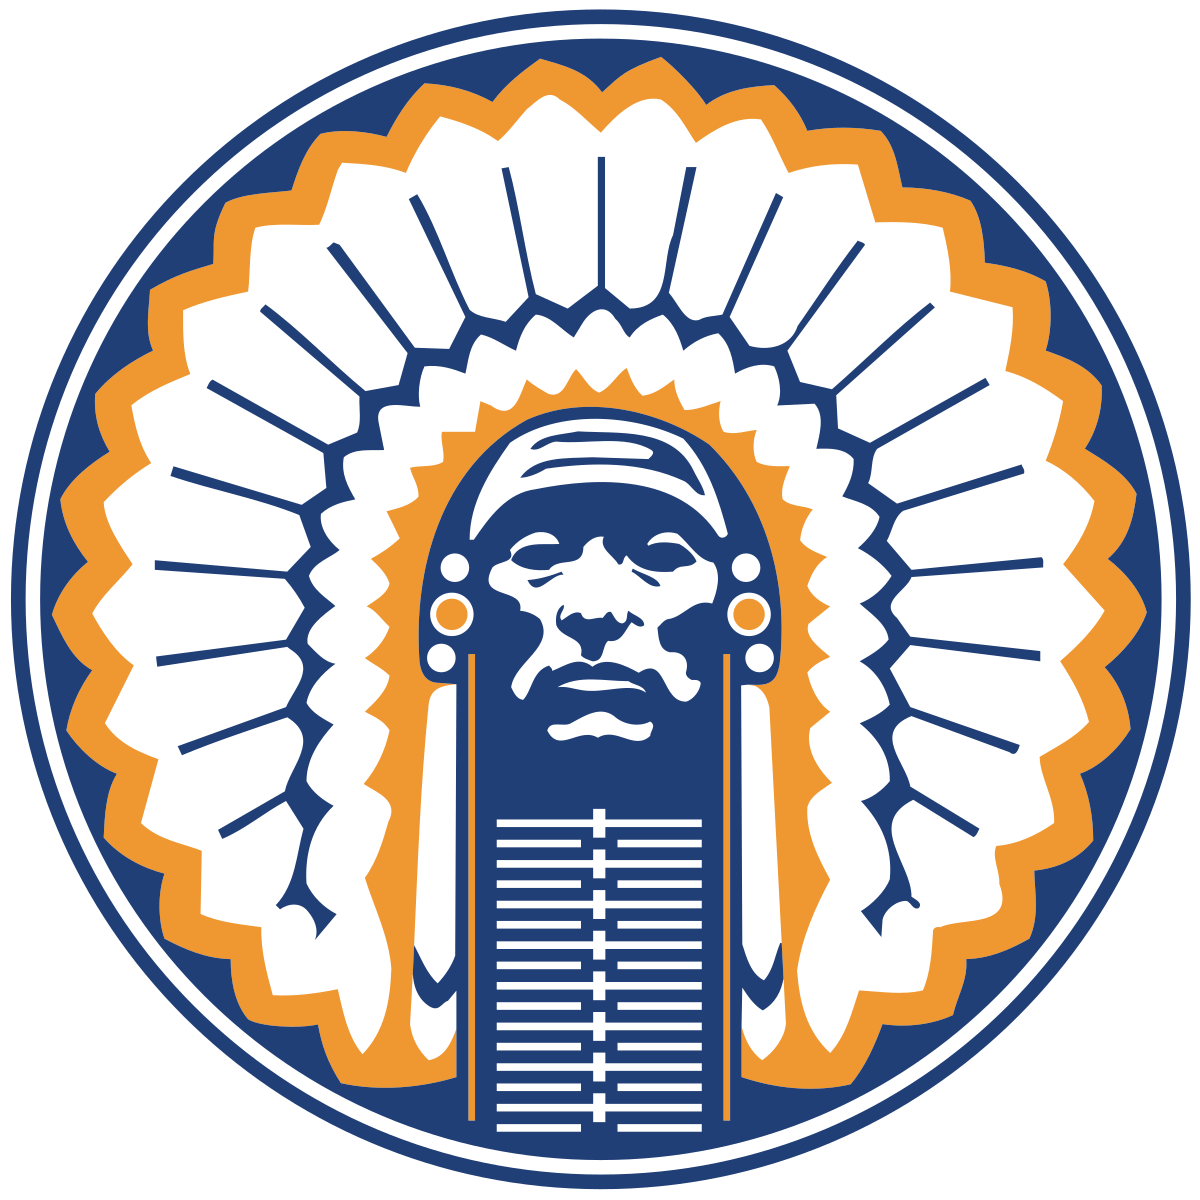 University of Illinois Logo - Chief Illiniwek